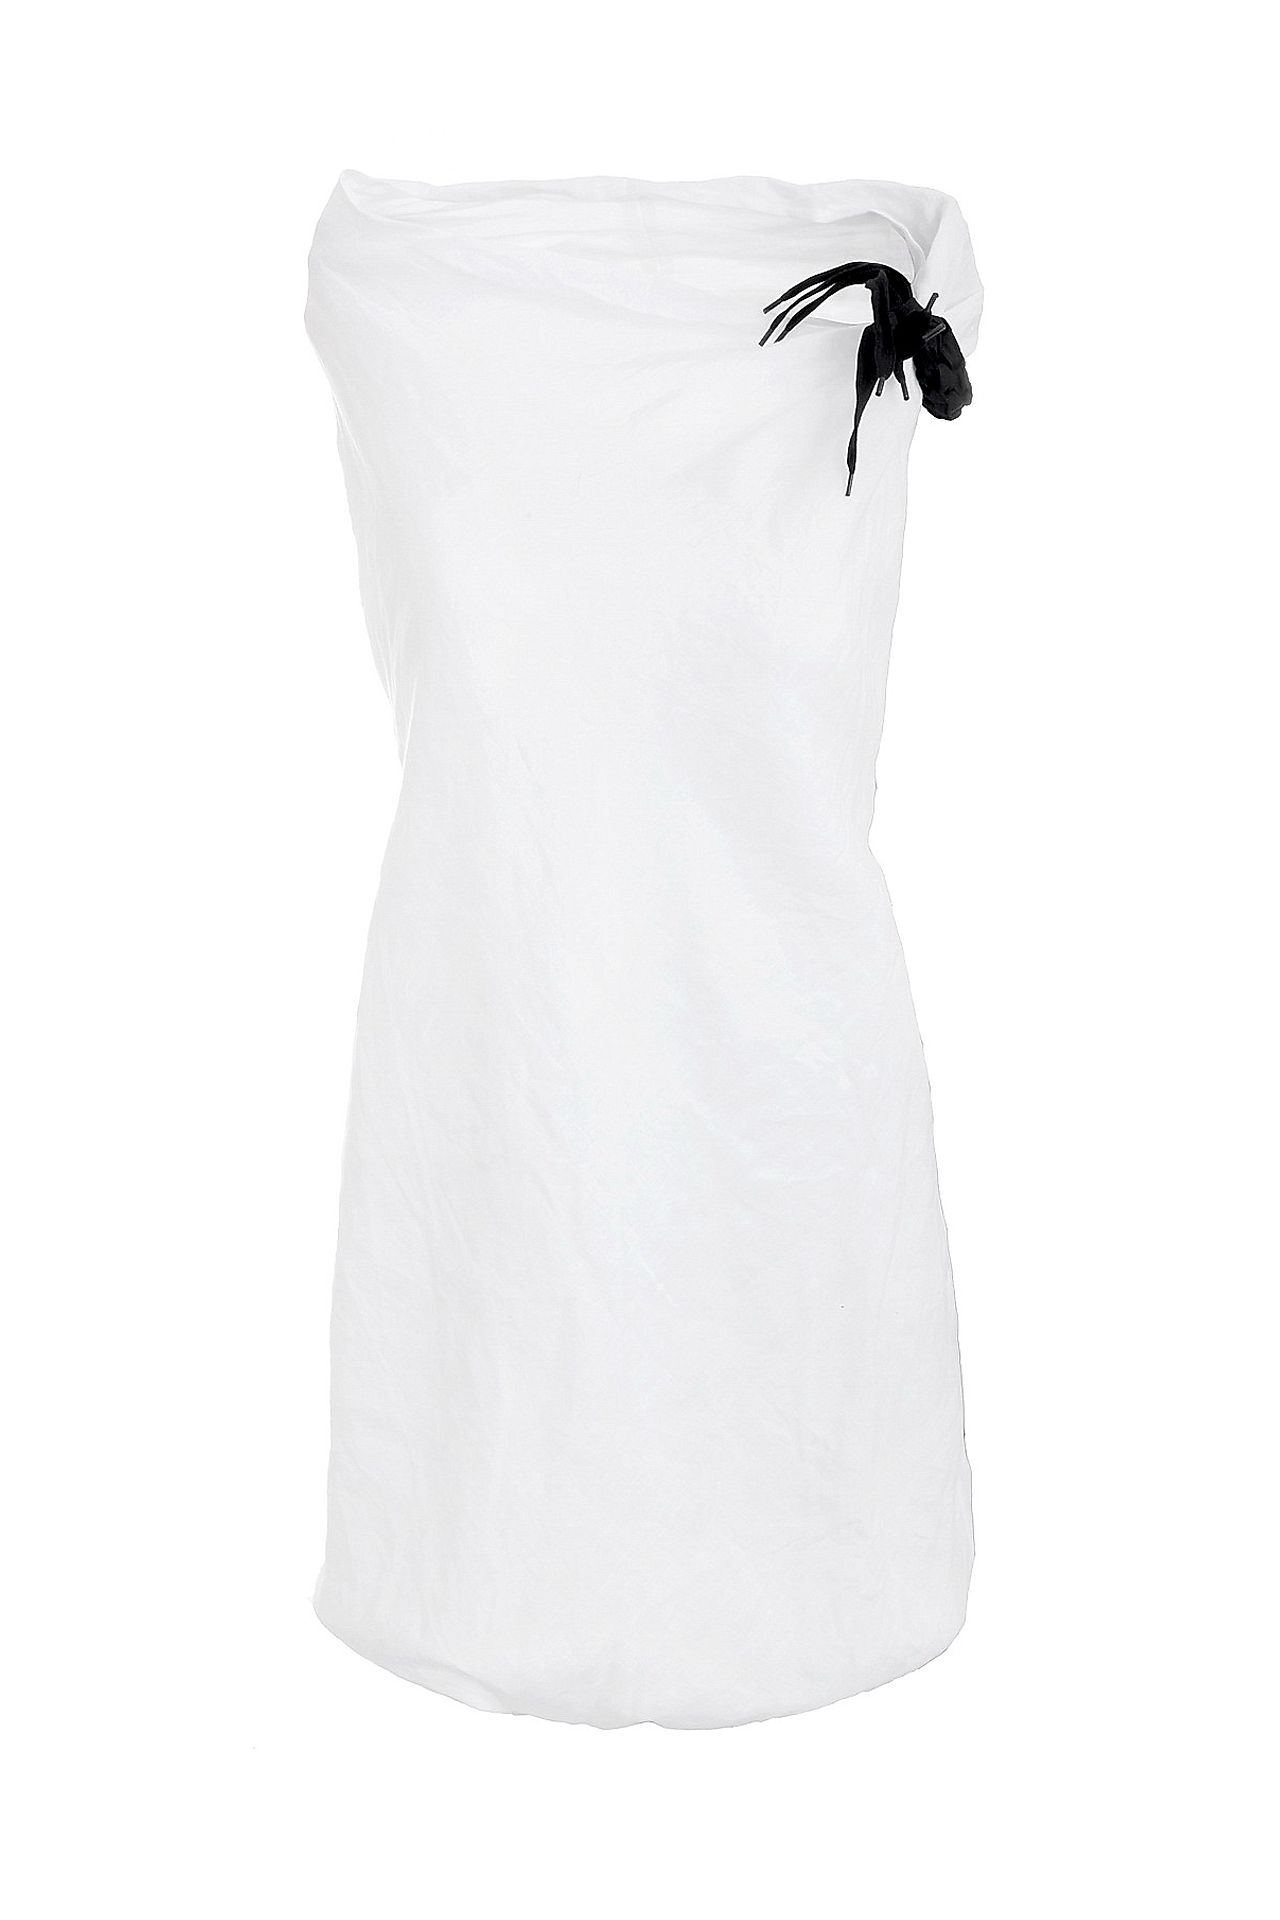 Одежда женская Платье LIVIANA CONTI (L2E674/12.1). Купить за 11600 руб.